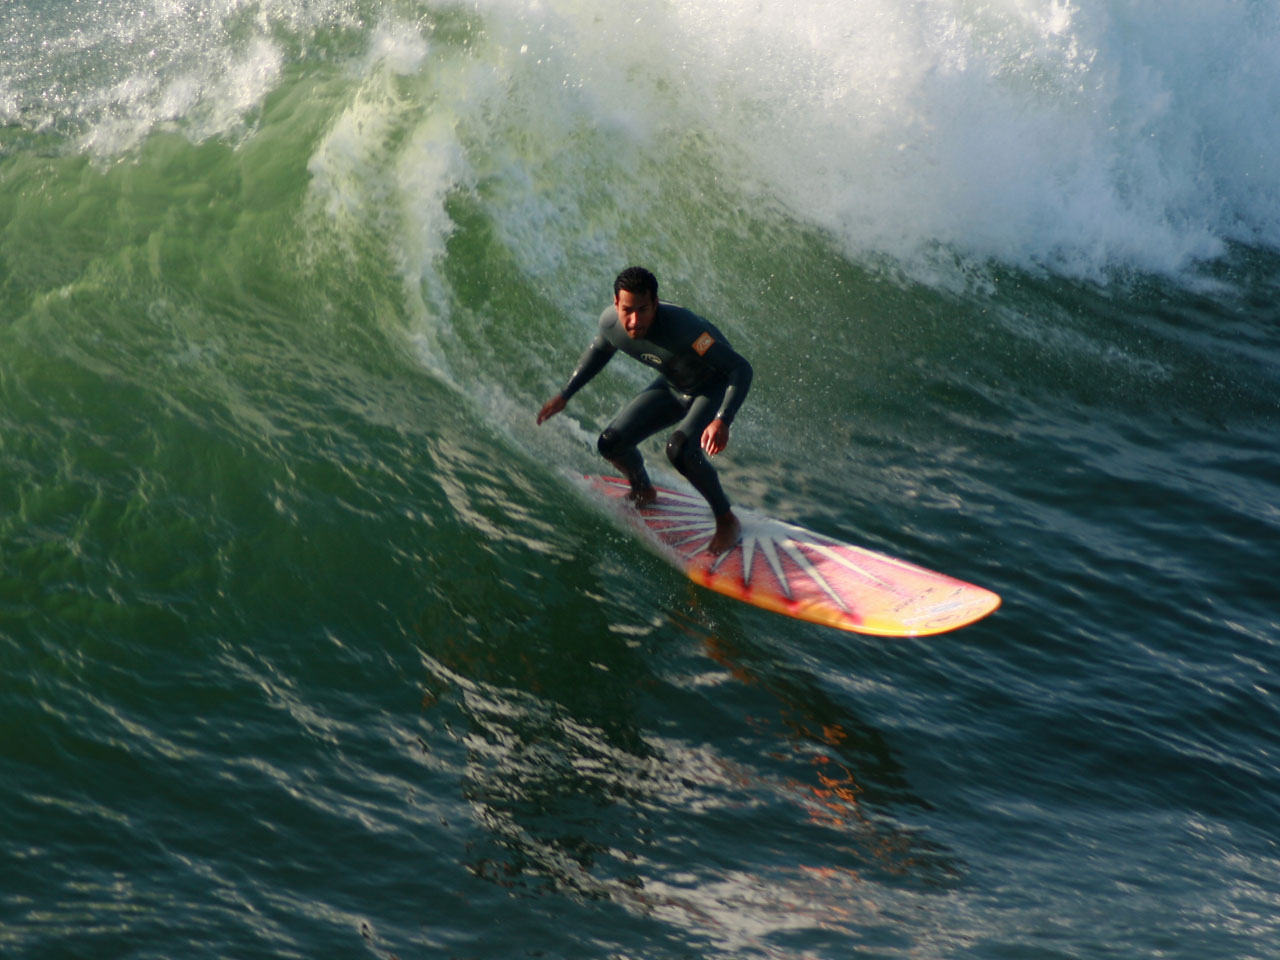 Longboard Surfer Drops In On A Wave